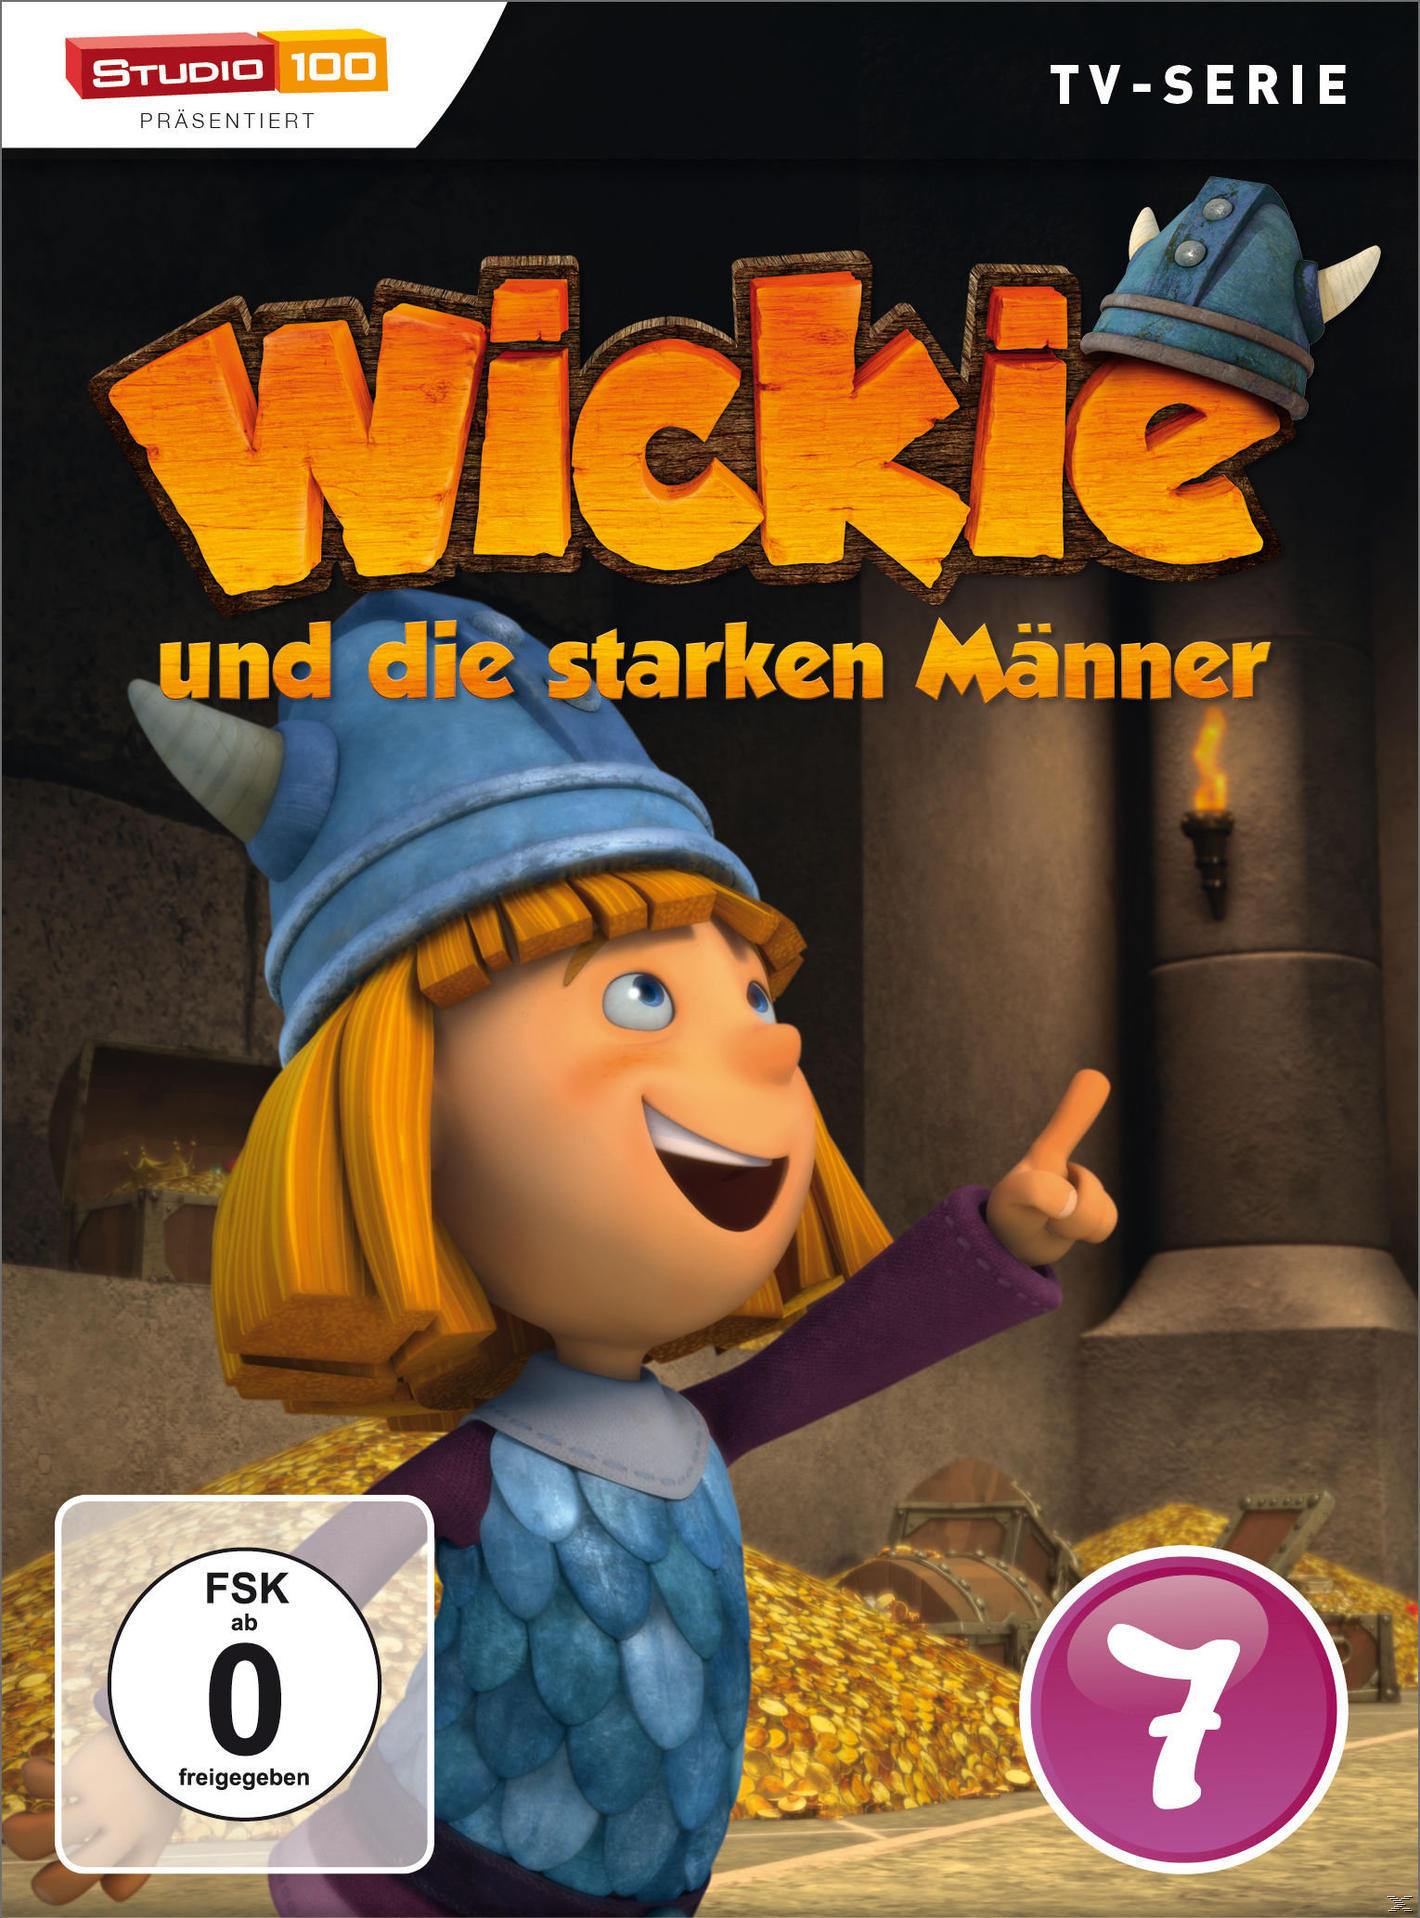 Wickie und die starken DVD Männer DVD - 7